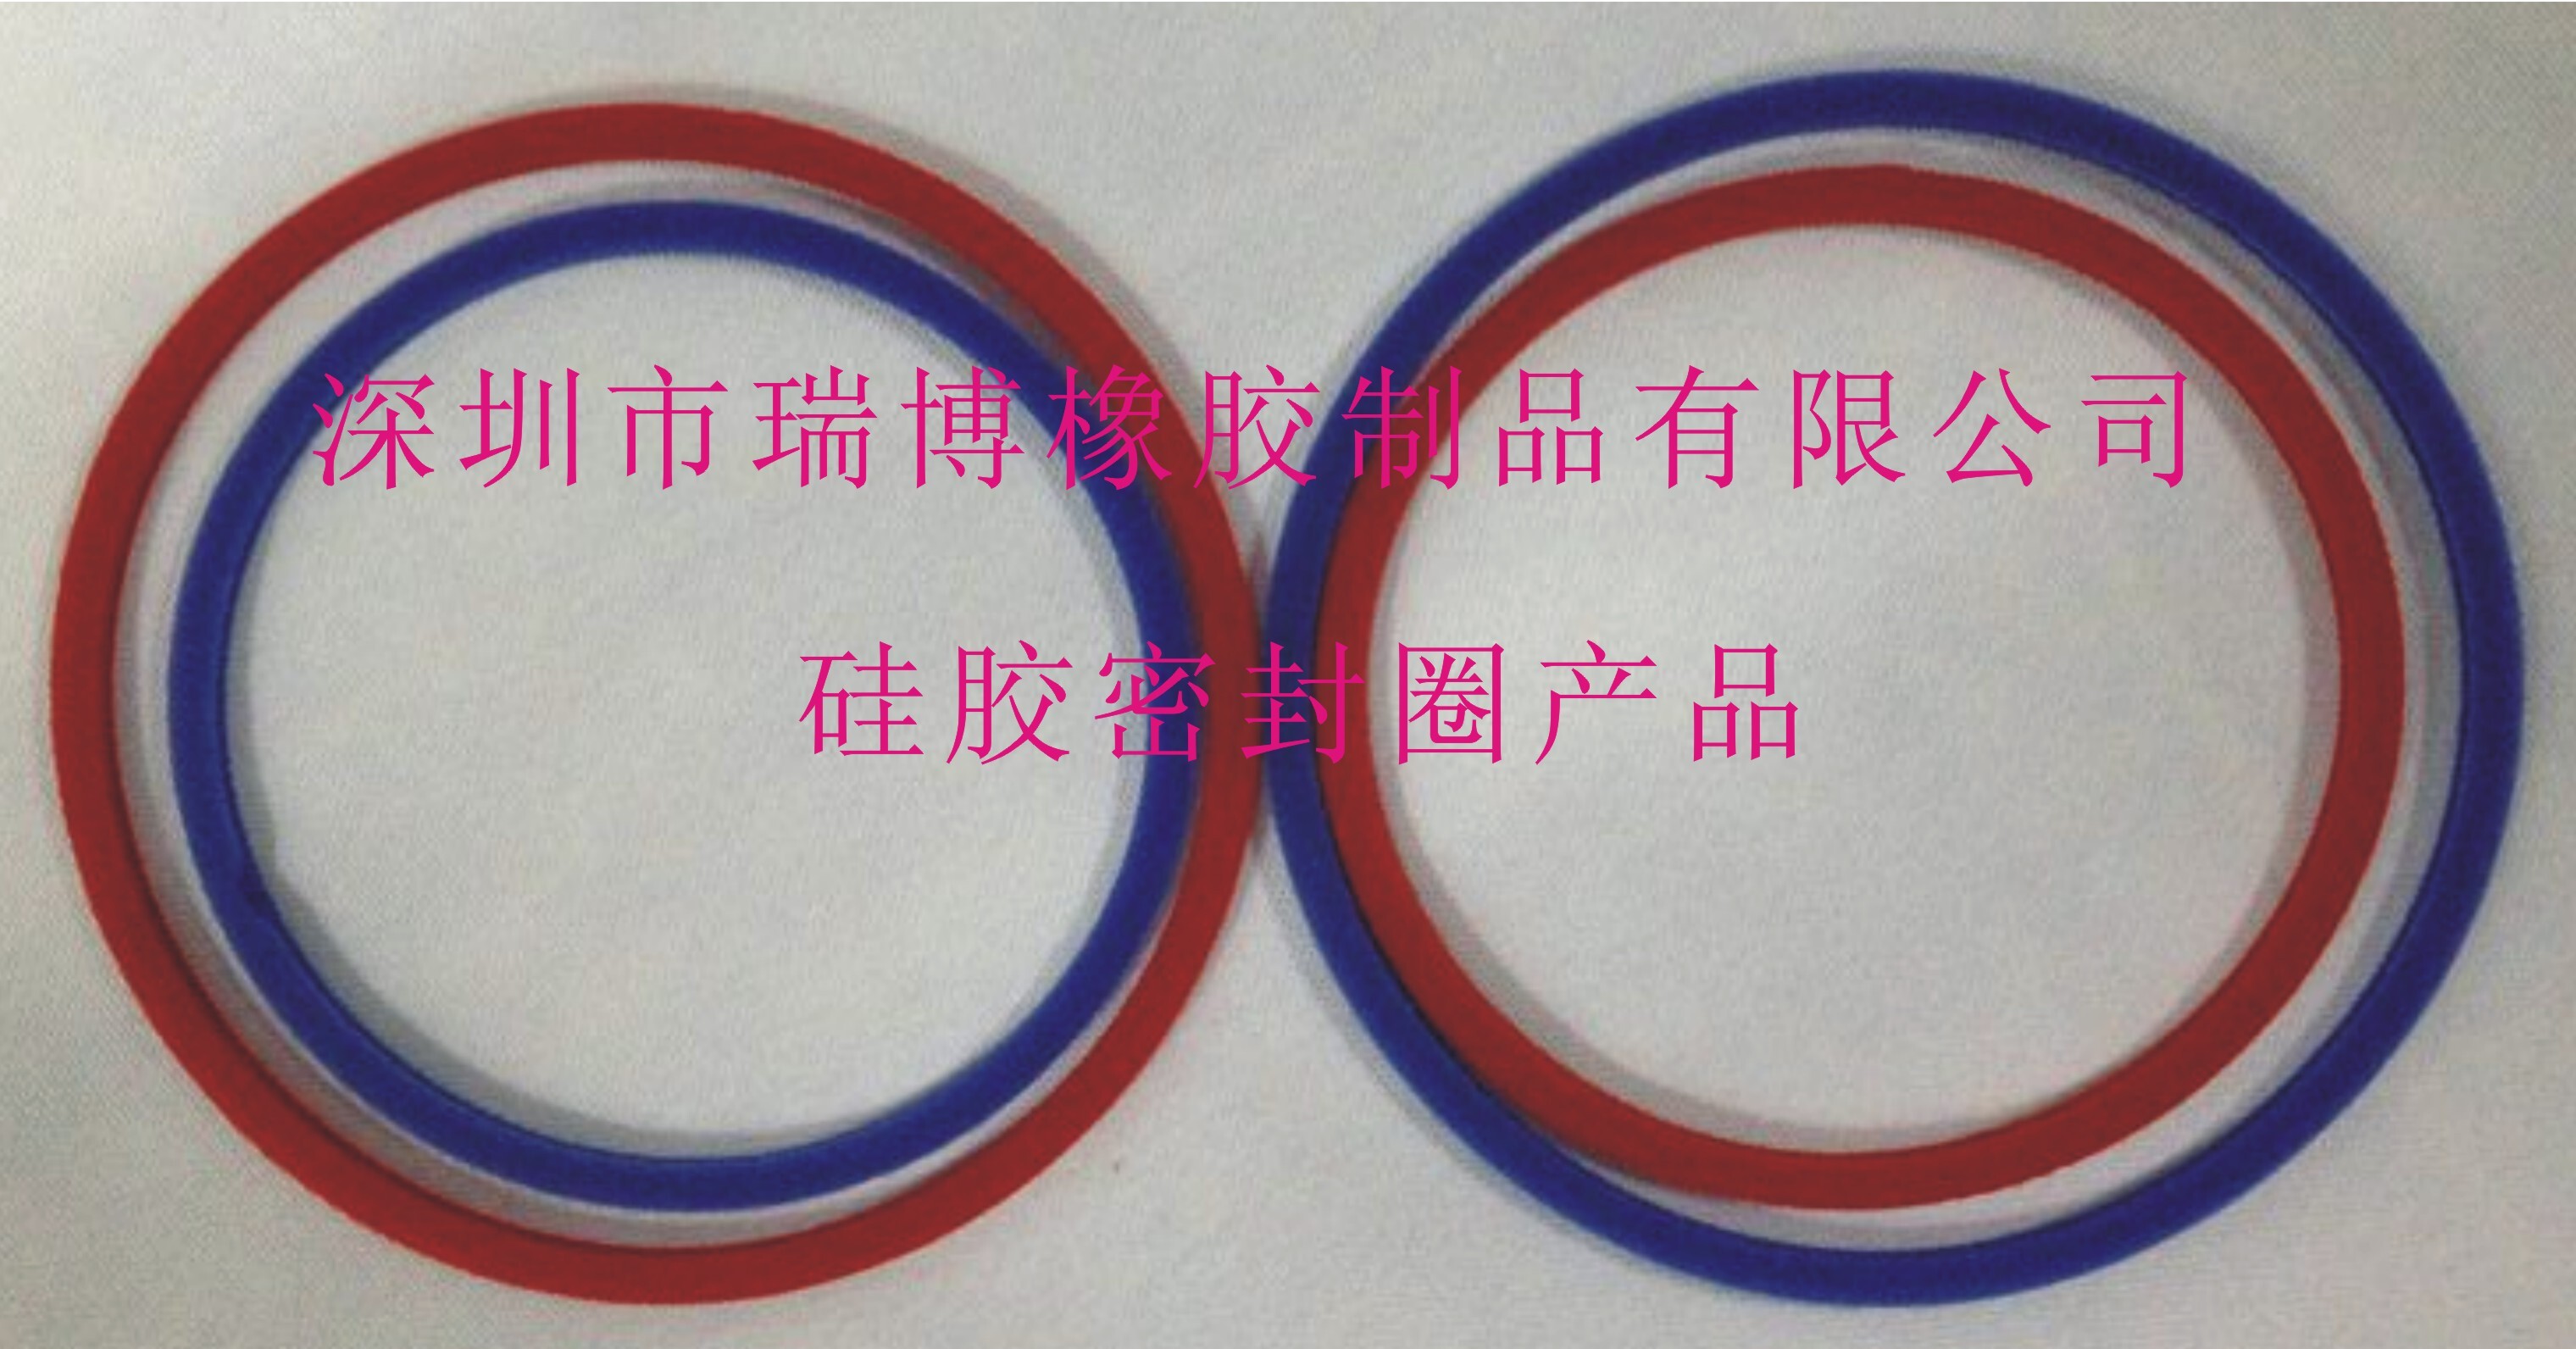 深圳市瑞博橡胶制品有限公司 硅胶密封圈